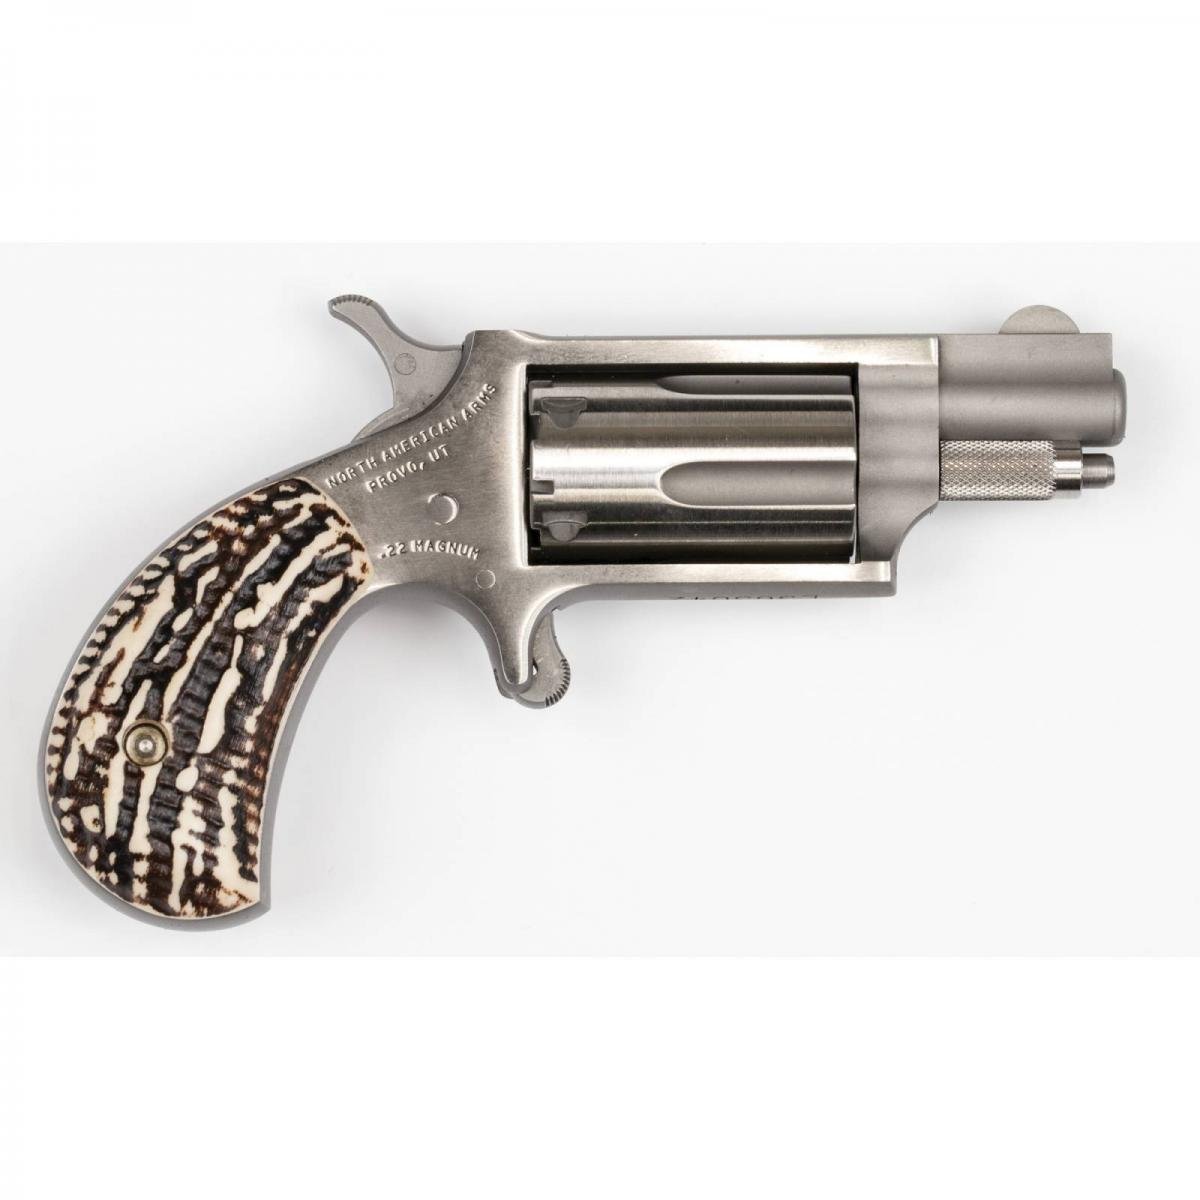 North American Arms Mini Revolver 22 WMR